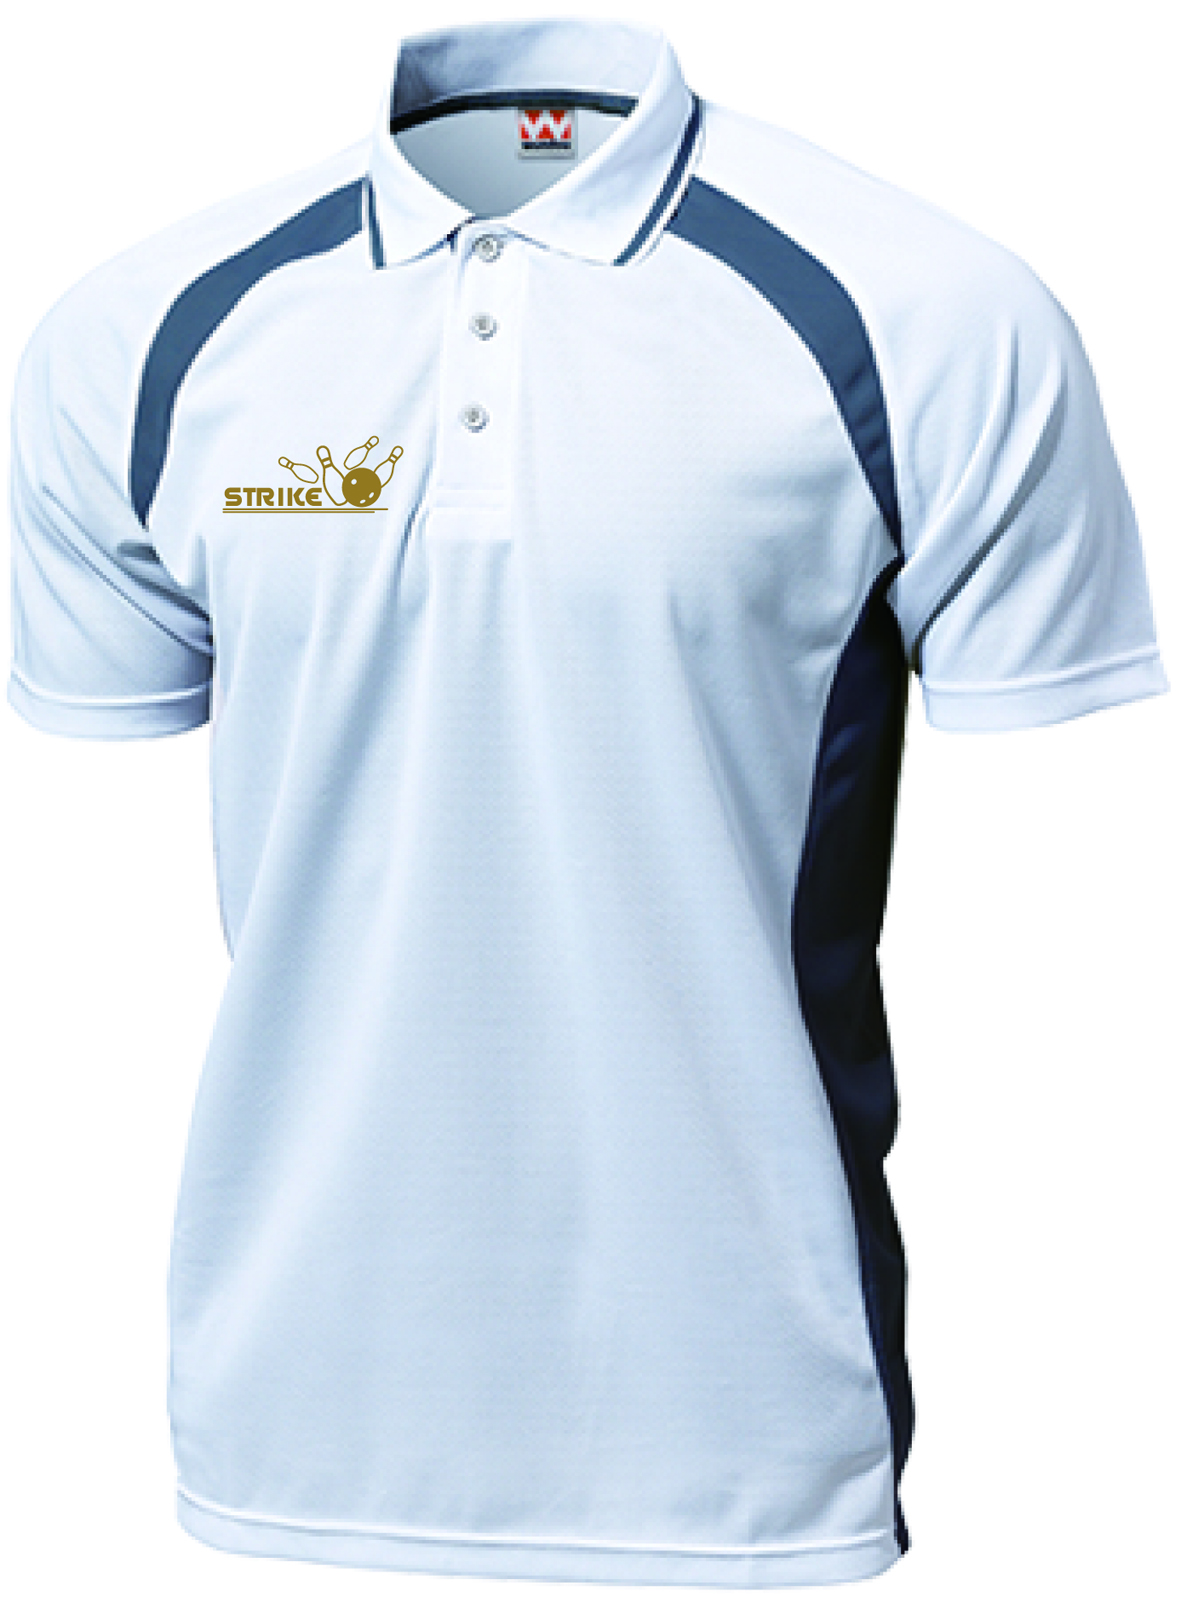 アスリートゲームシャツT-171(名入れ２行無料)、ボウリングワンポイントデザイン入り、スポーツの為のポロシャツ、全９色-4デザイン、送料無料画像